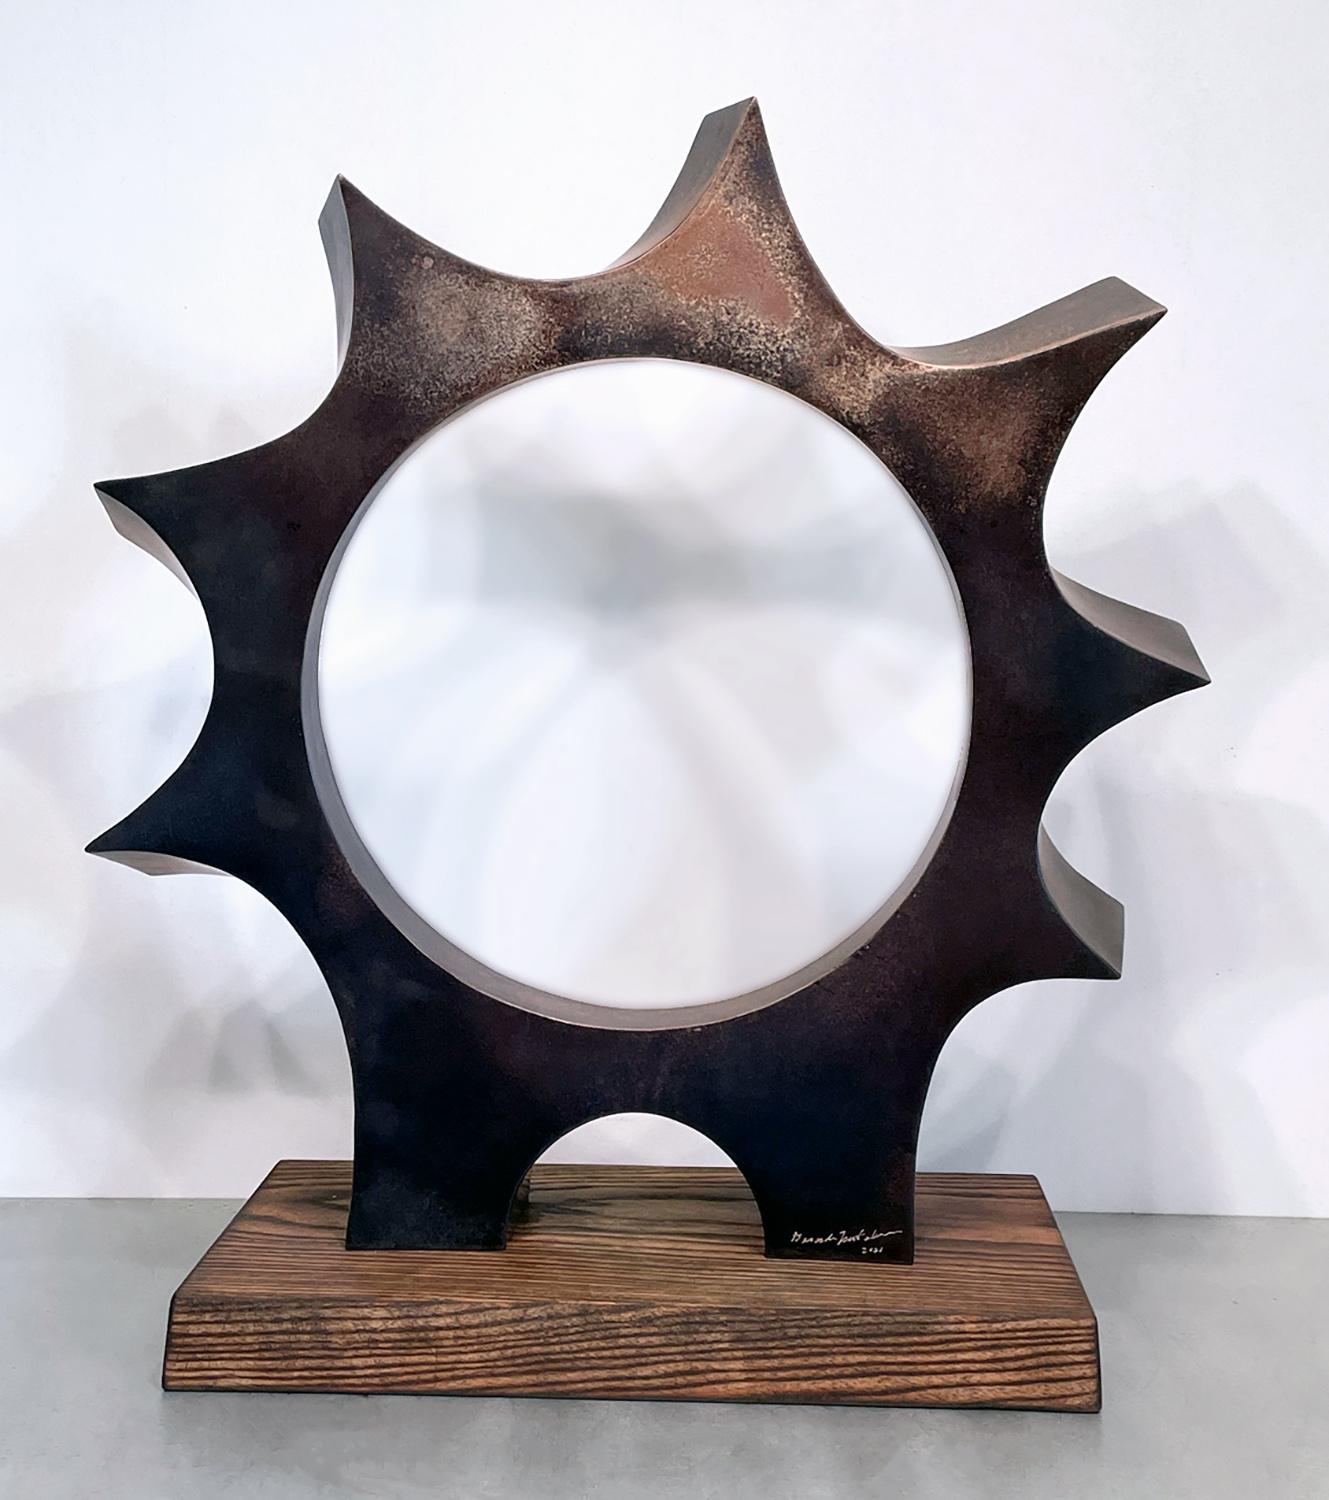 Gerard Tsutakawa Abstract Sculpture - "The Beginning" unique bronze sculpture